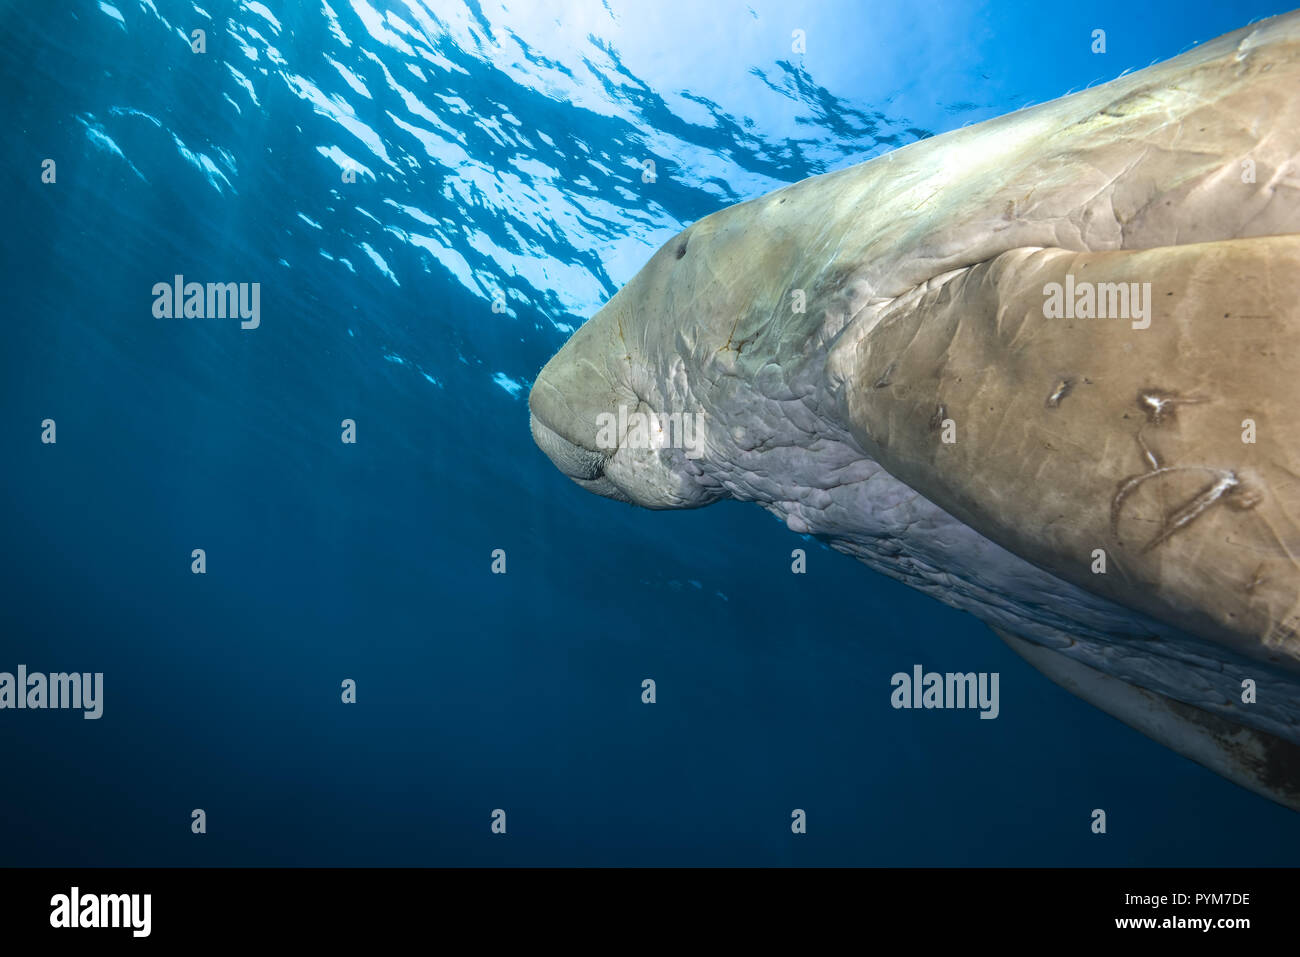 Portrait de Dugong ou Sea Cow, Dugong dugon nager dans l'eau bleue sous la surface Banque D'Images